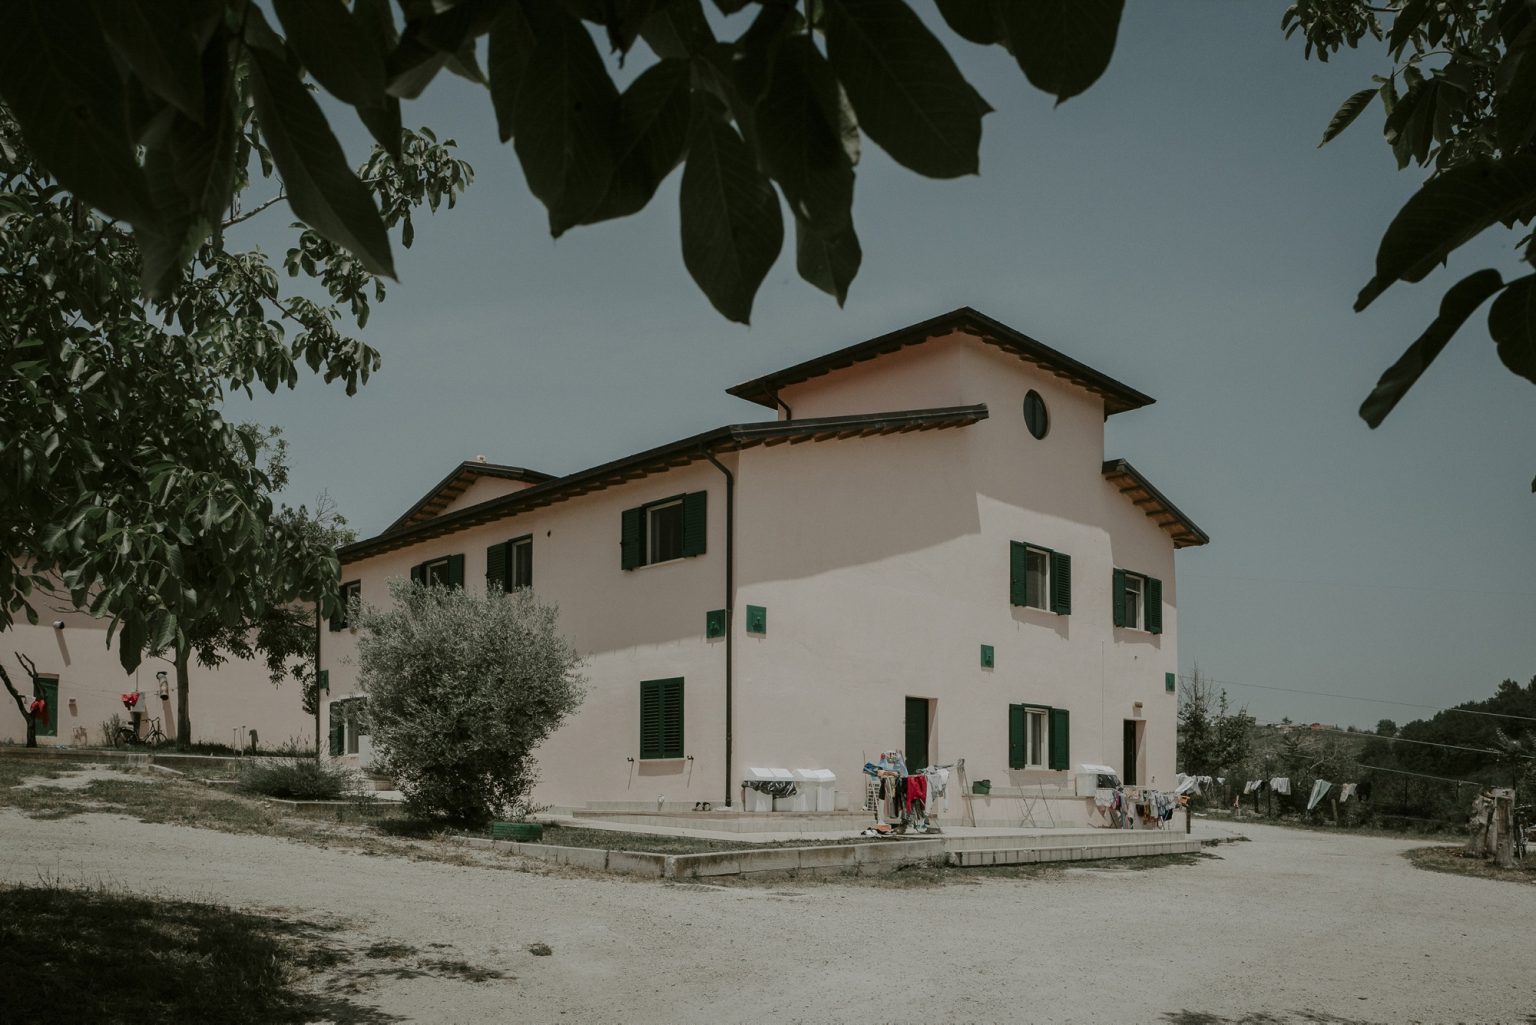 Canzano (Teramo), Abruzzo, June 2019 - Canzano shelter for refugees and asylum seekers. ><
Canzano (Teramo), Abruzzo, giugno 2019 - CAS Canzano (Centro di accoglienza straordinaria di richiedenti asilo e rifugiati).